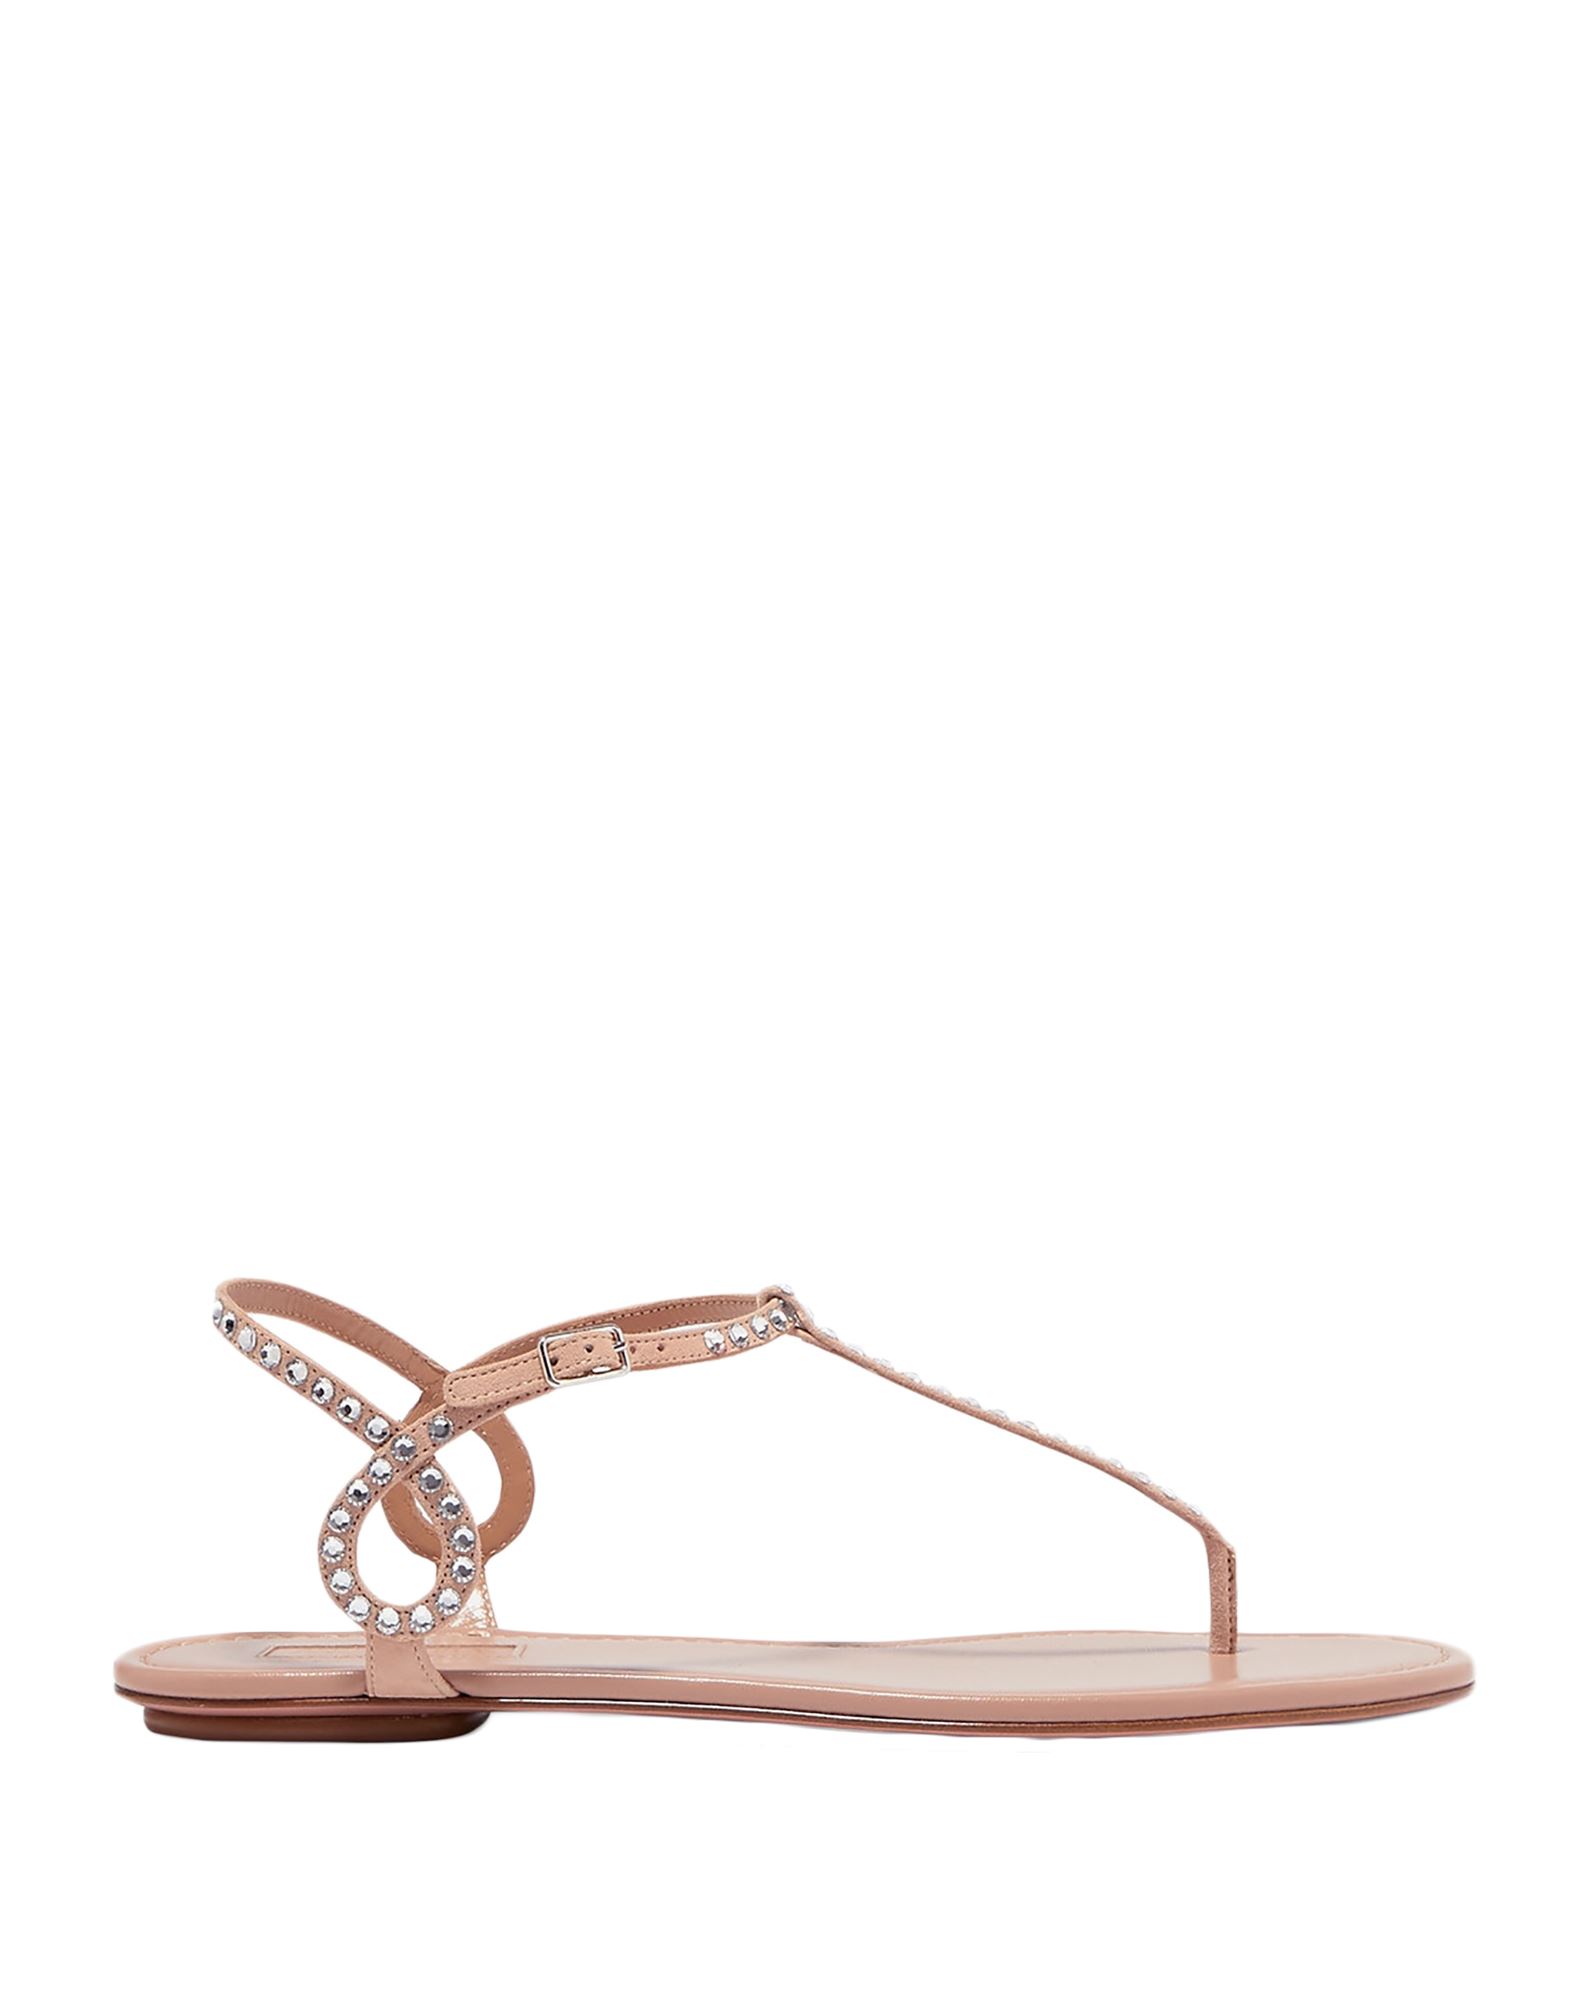 Aquazzura Toe Strap Sandals In Pale Pink